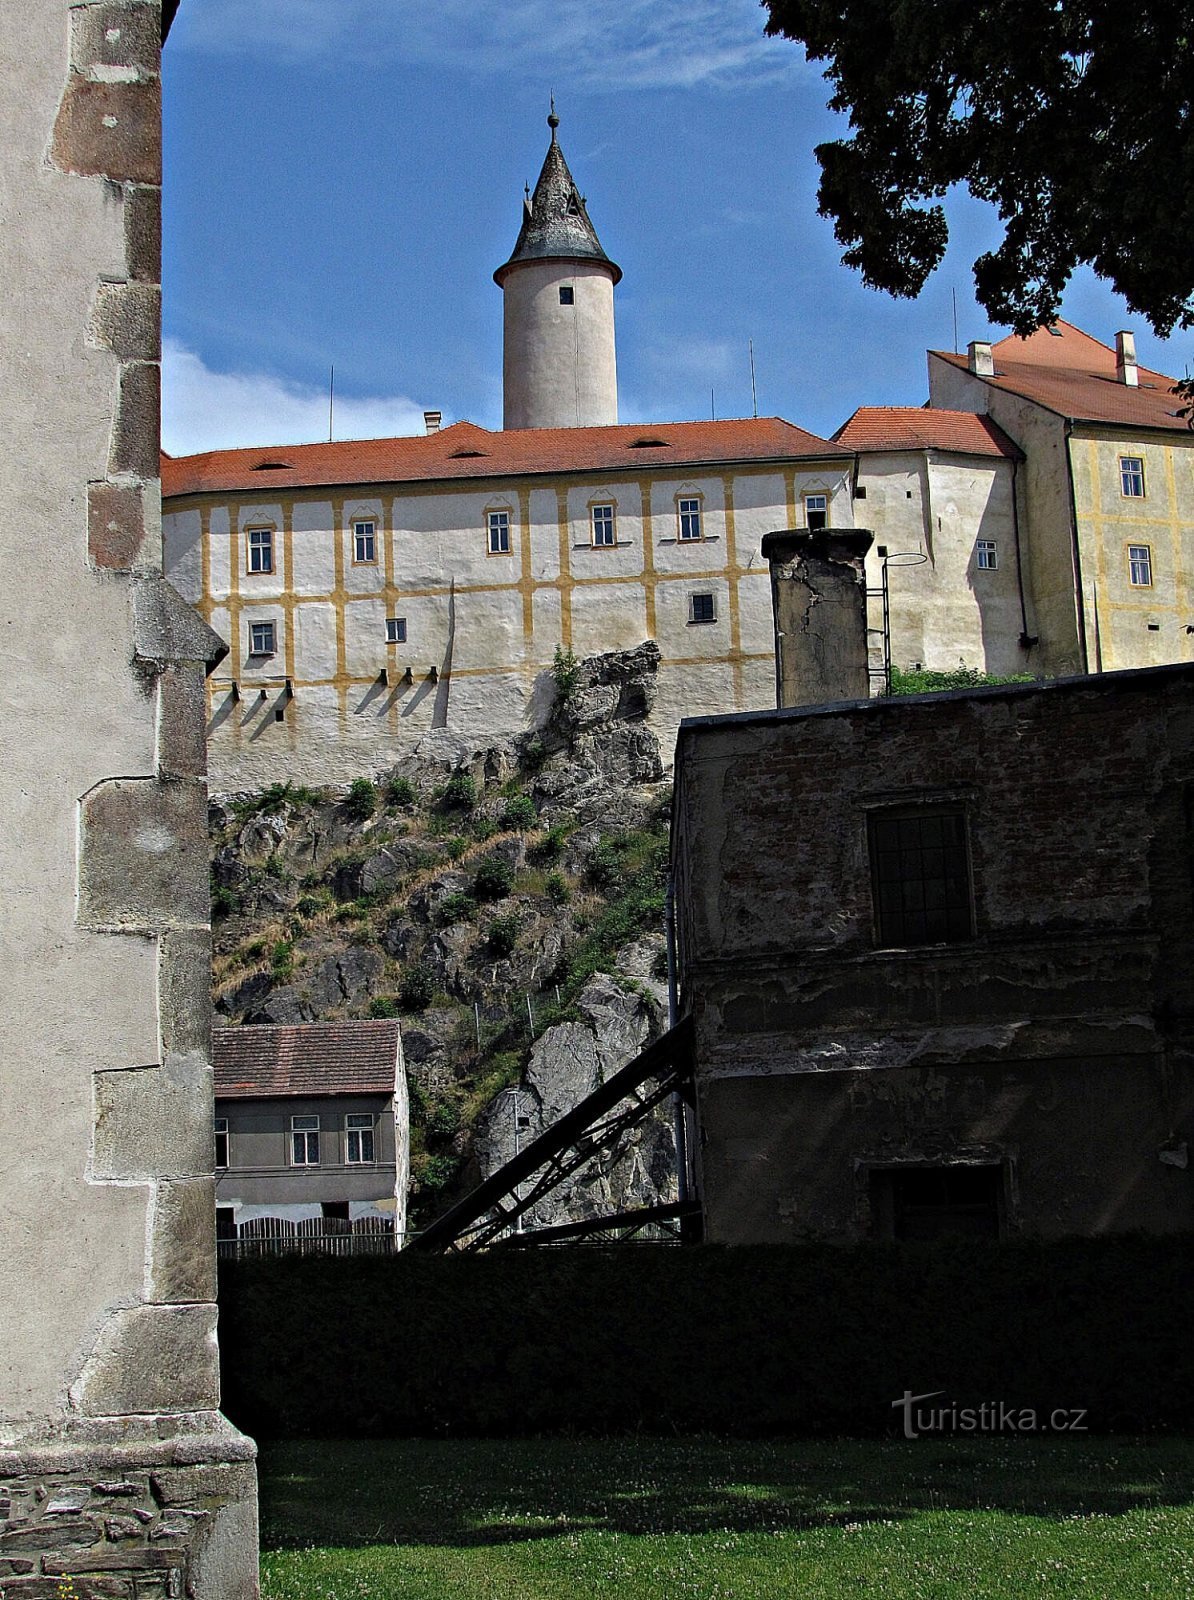 Slottsområdet i Ledč nad Sázavou